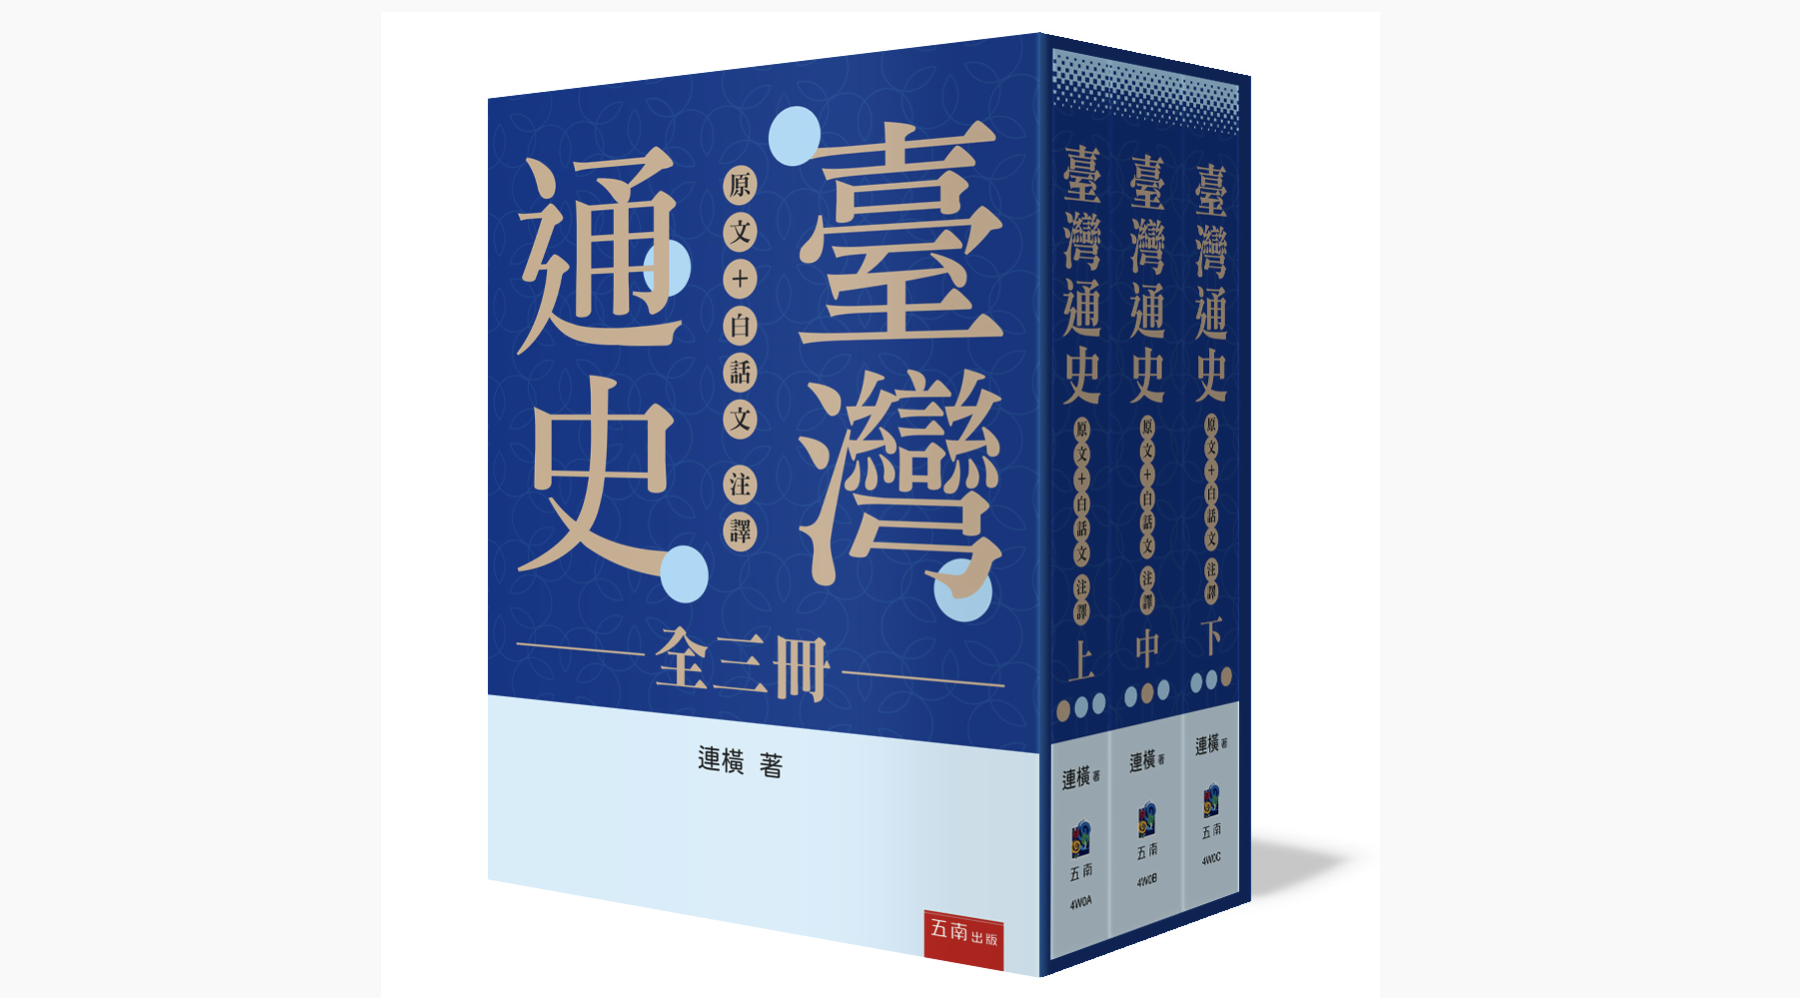 《台灣通史》白話版今年出爐 「補充課本沒有的常識」